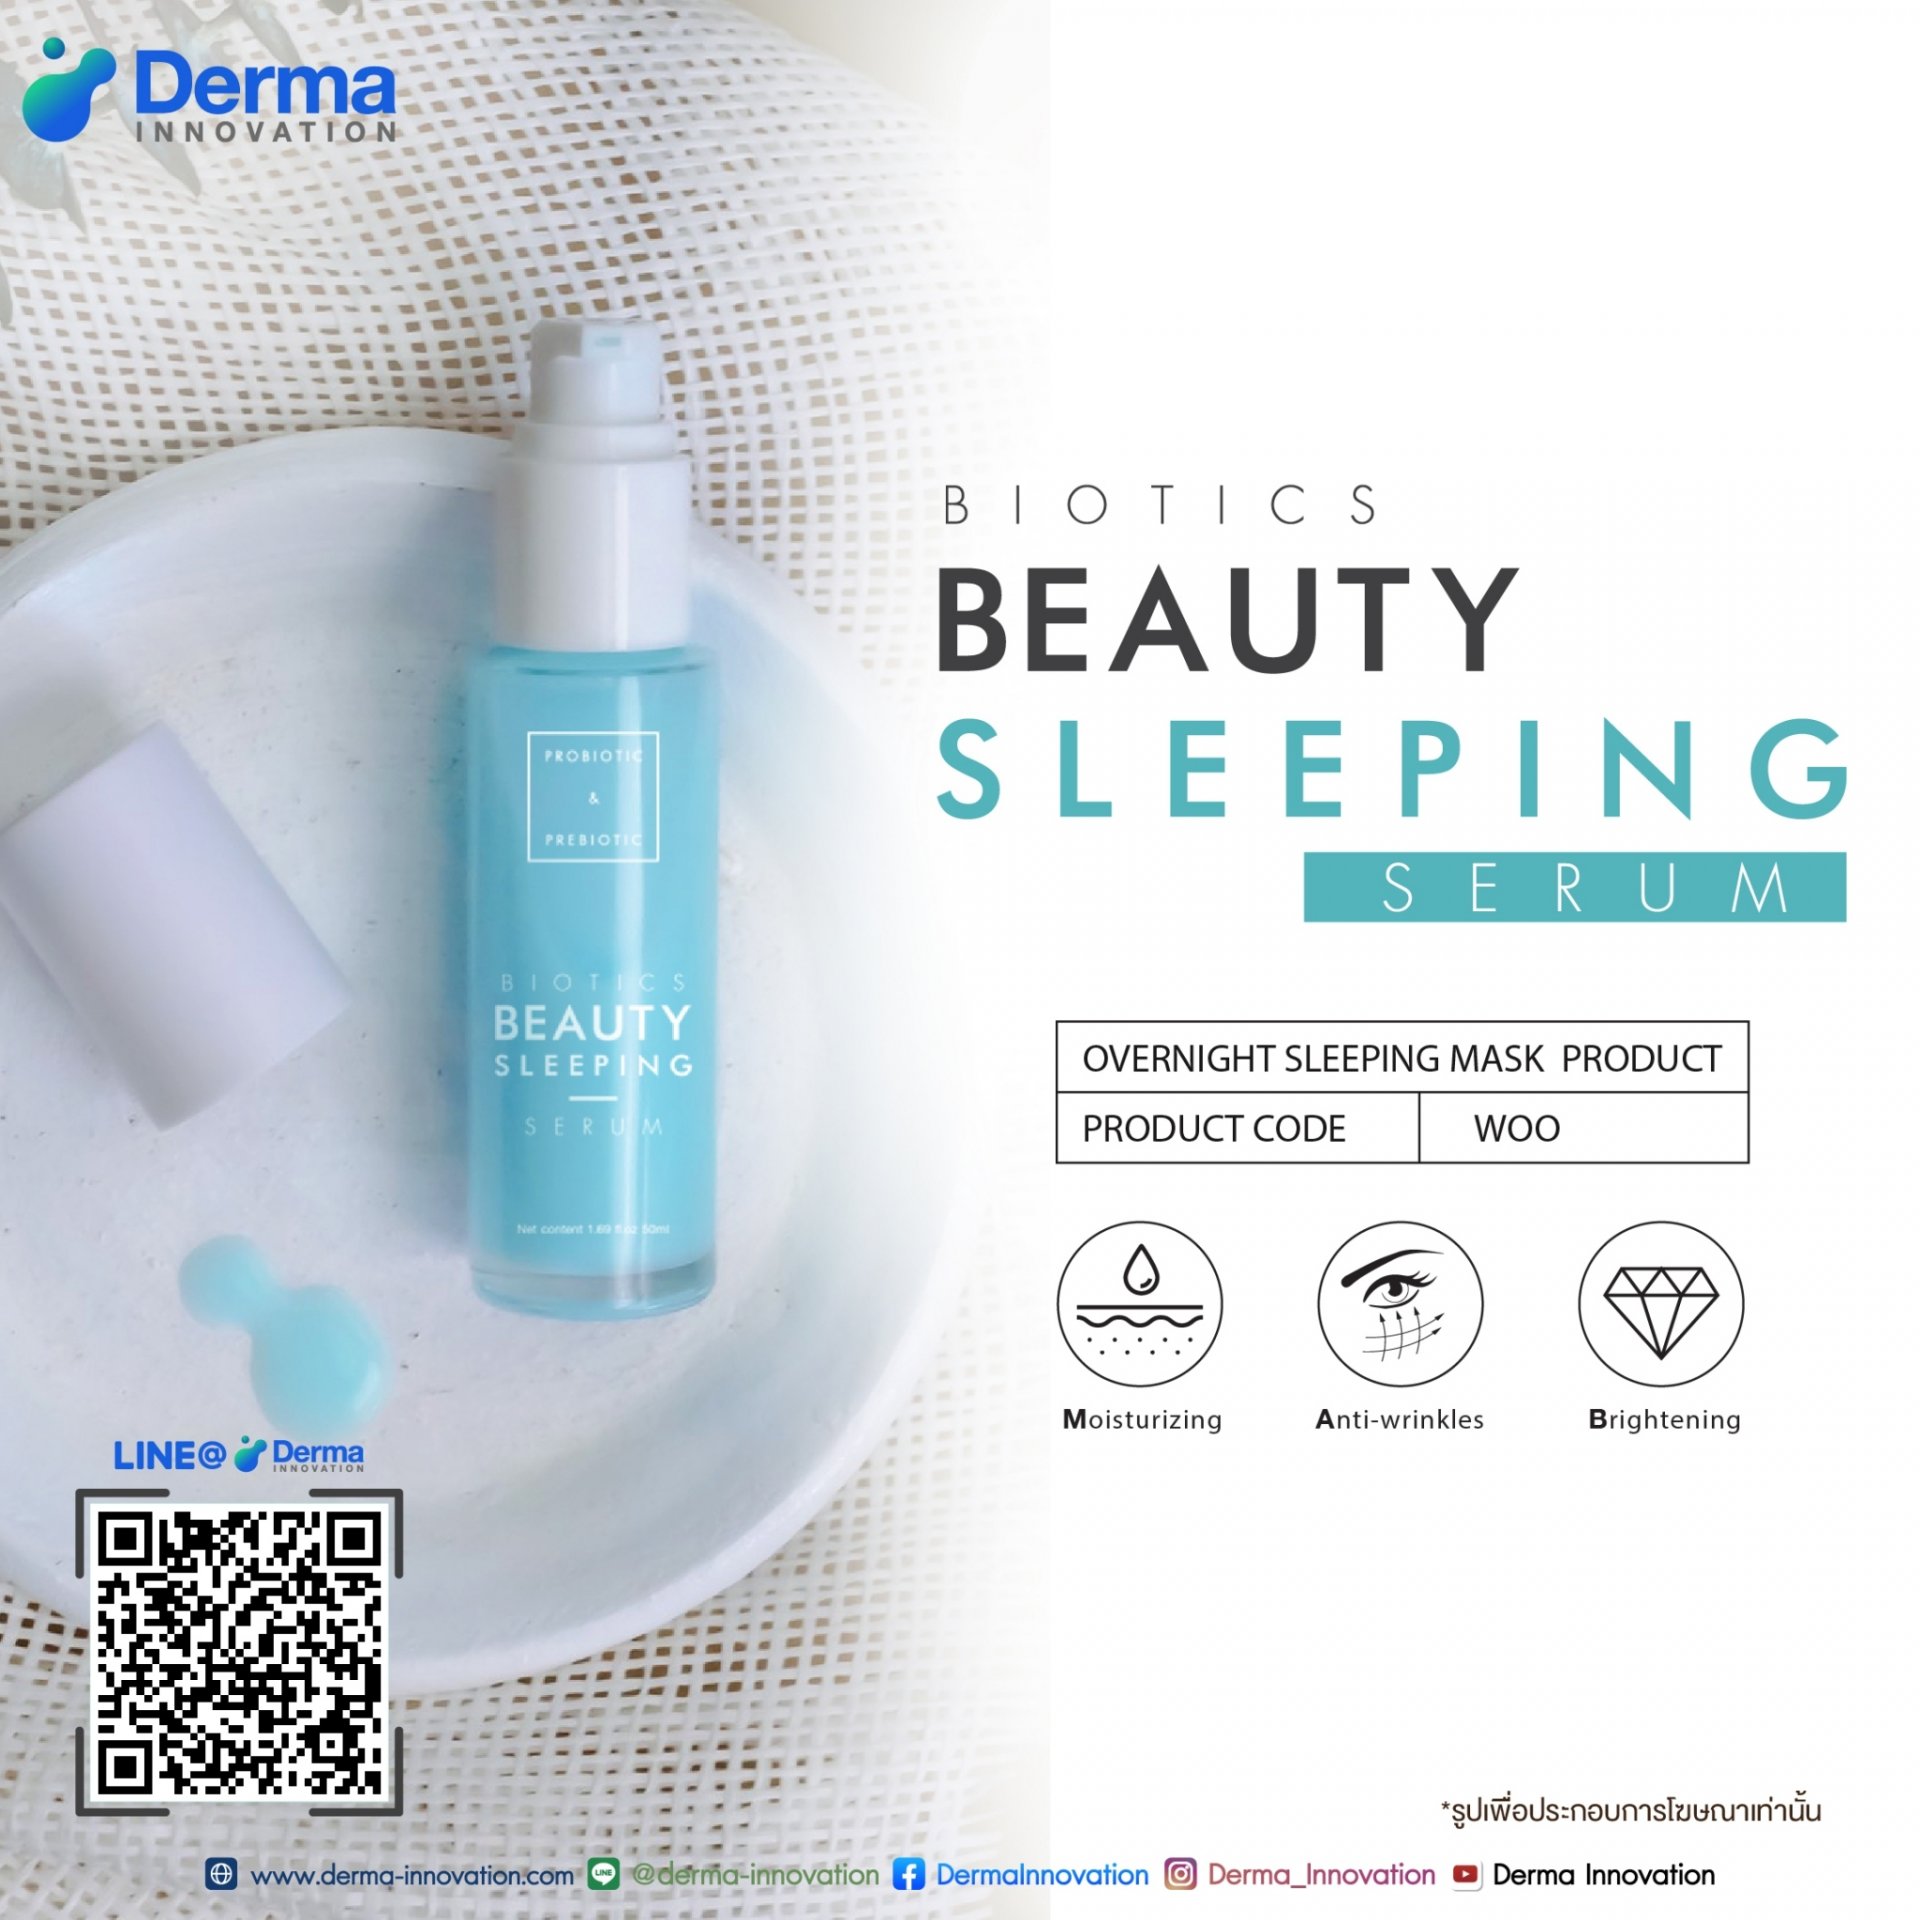 Biotics Beauty Sleeping Serum